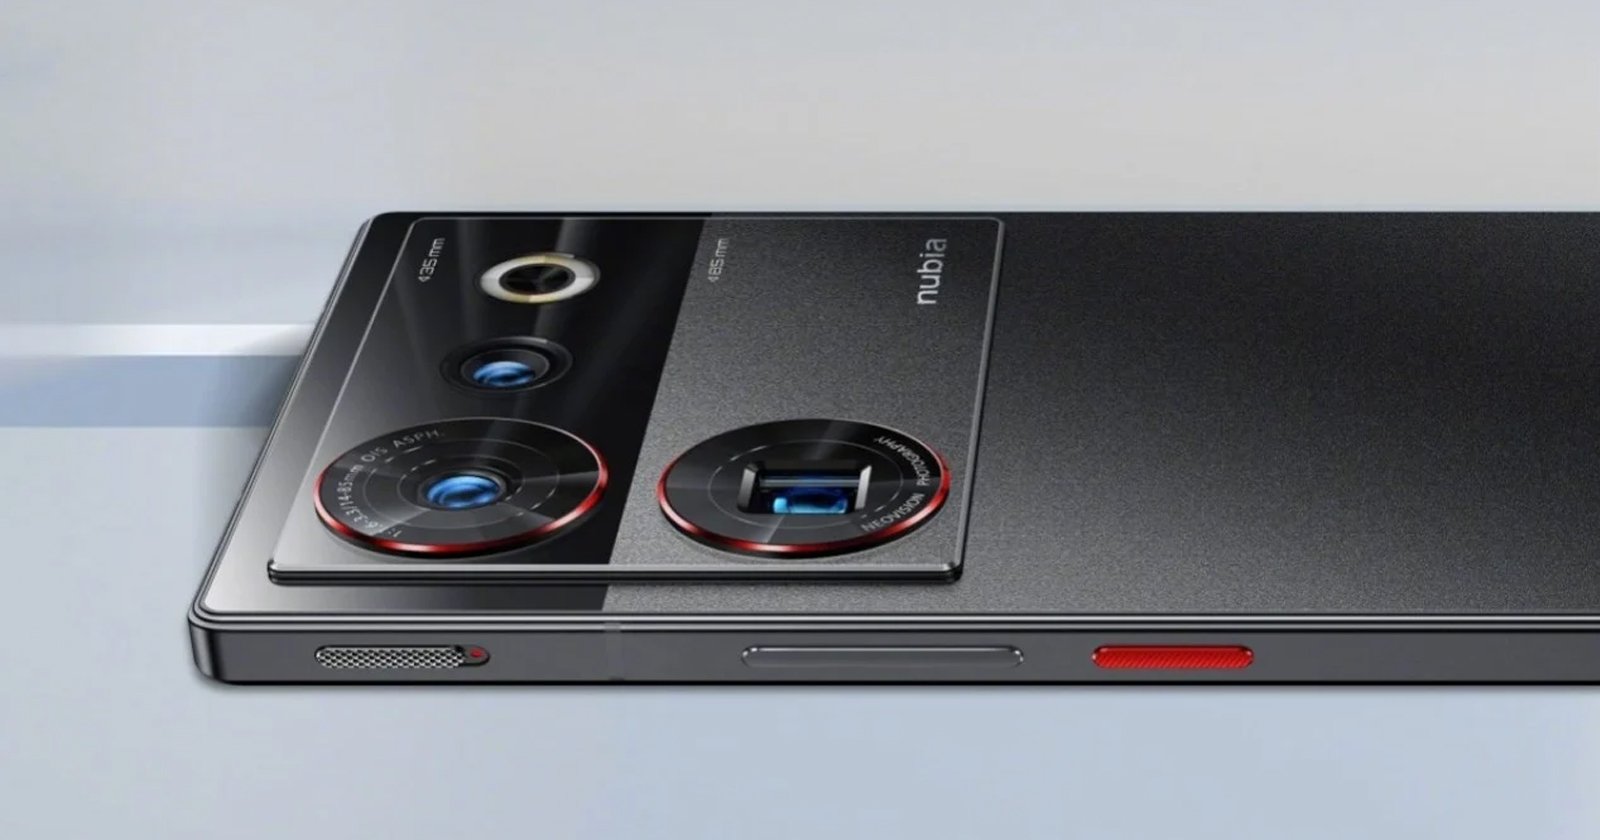 6000 мА·ч, IP68, Snapdragon 8 Gen 3, флагманская камера с тройной стабилизацией и «чистый» экран. Раскрыты характеристики Nubia Z60 Ultra, стартовали предзаказы